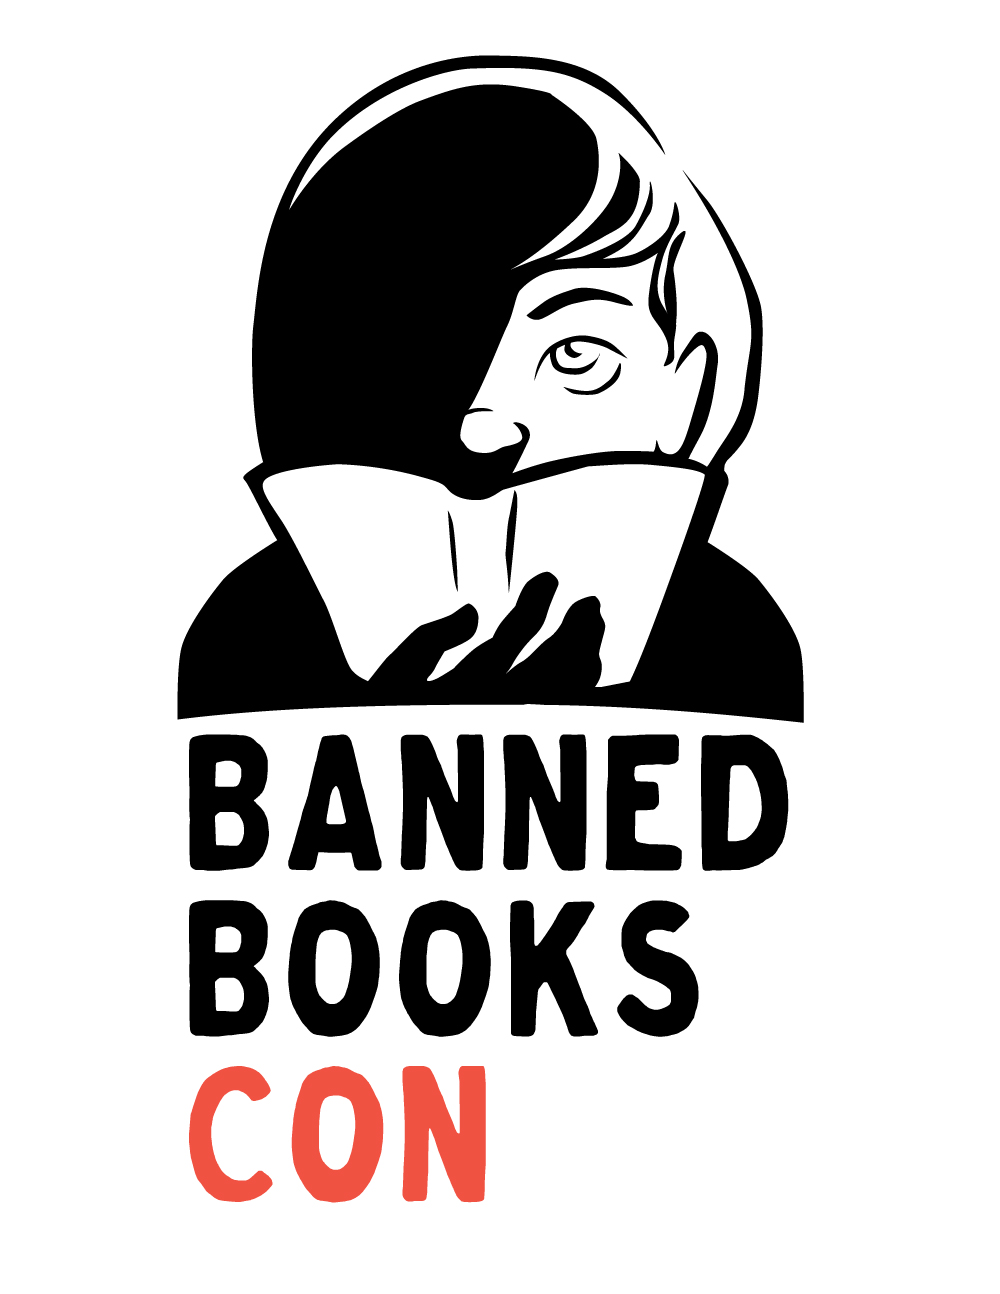 Banned Books Con logo